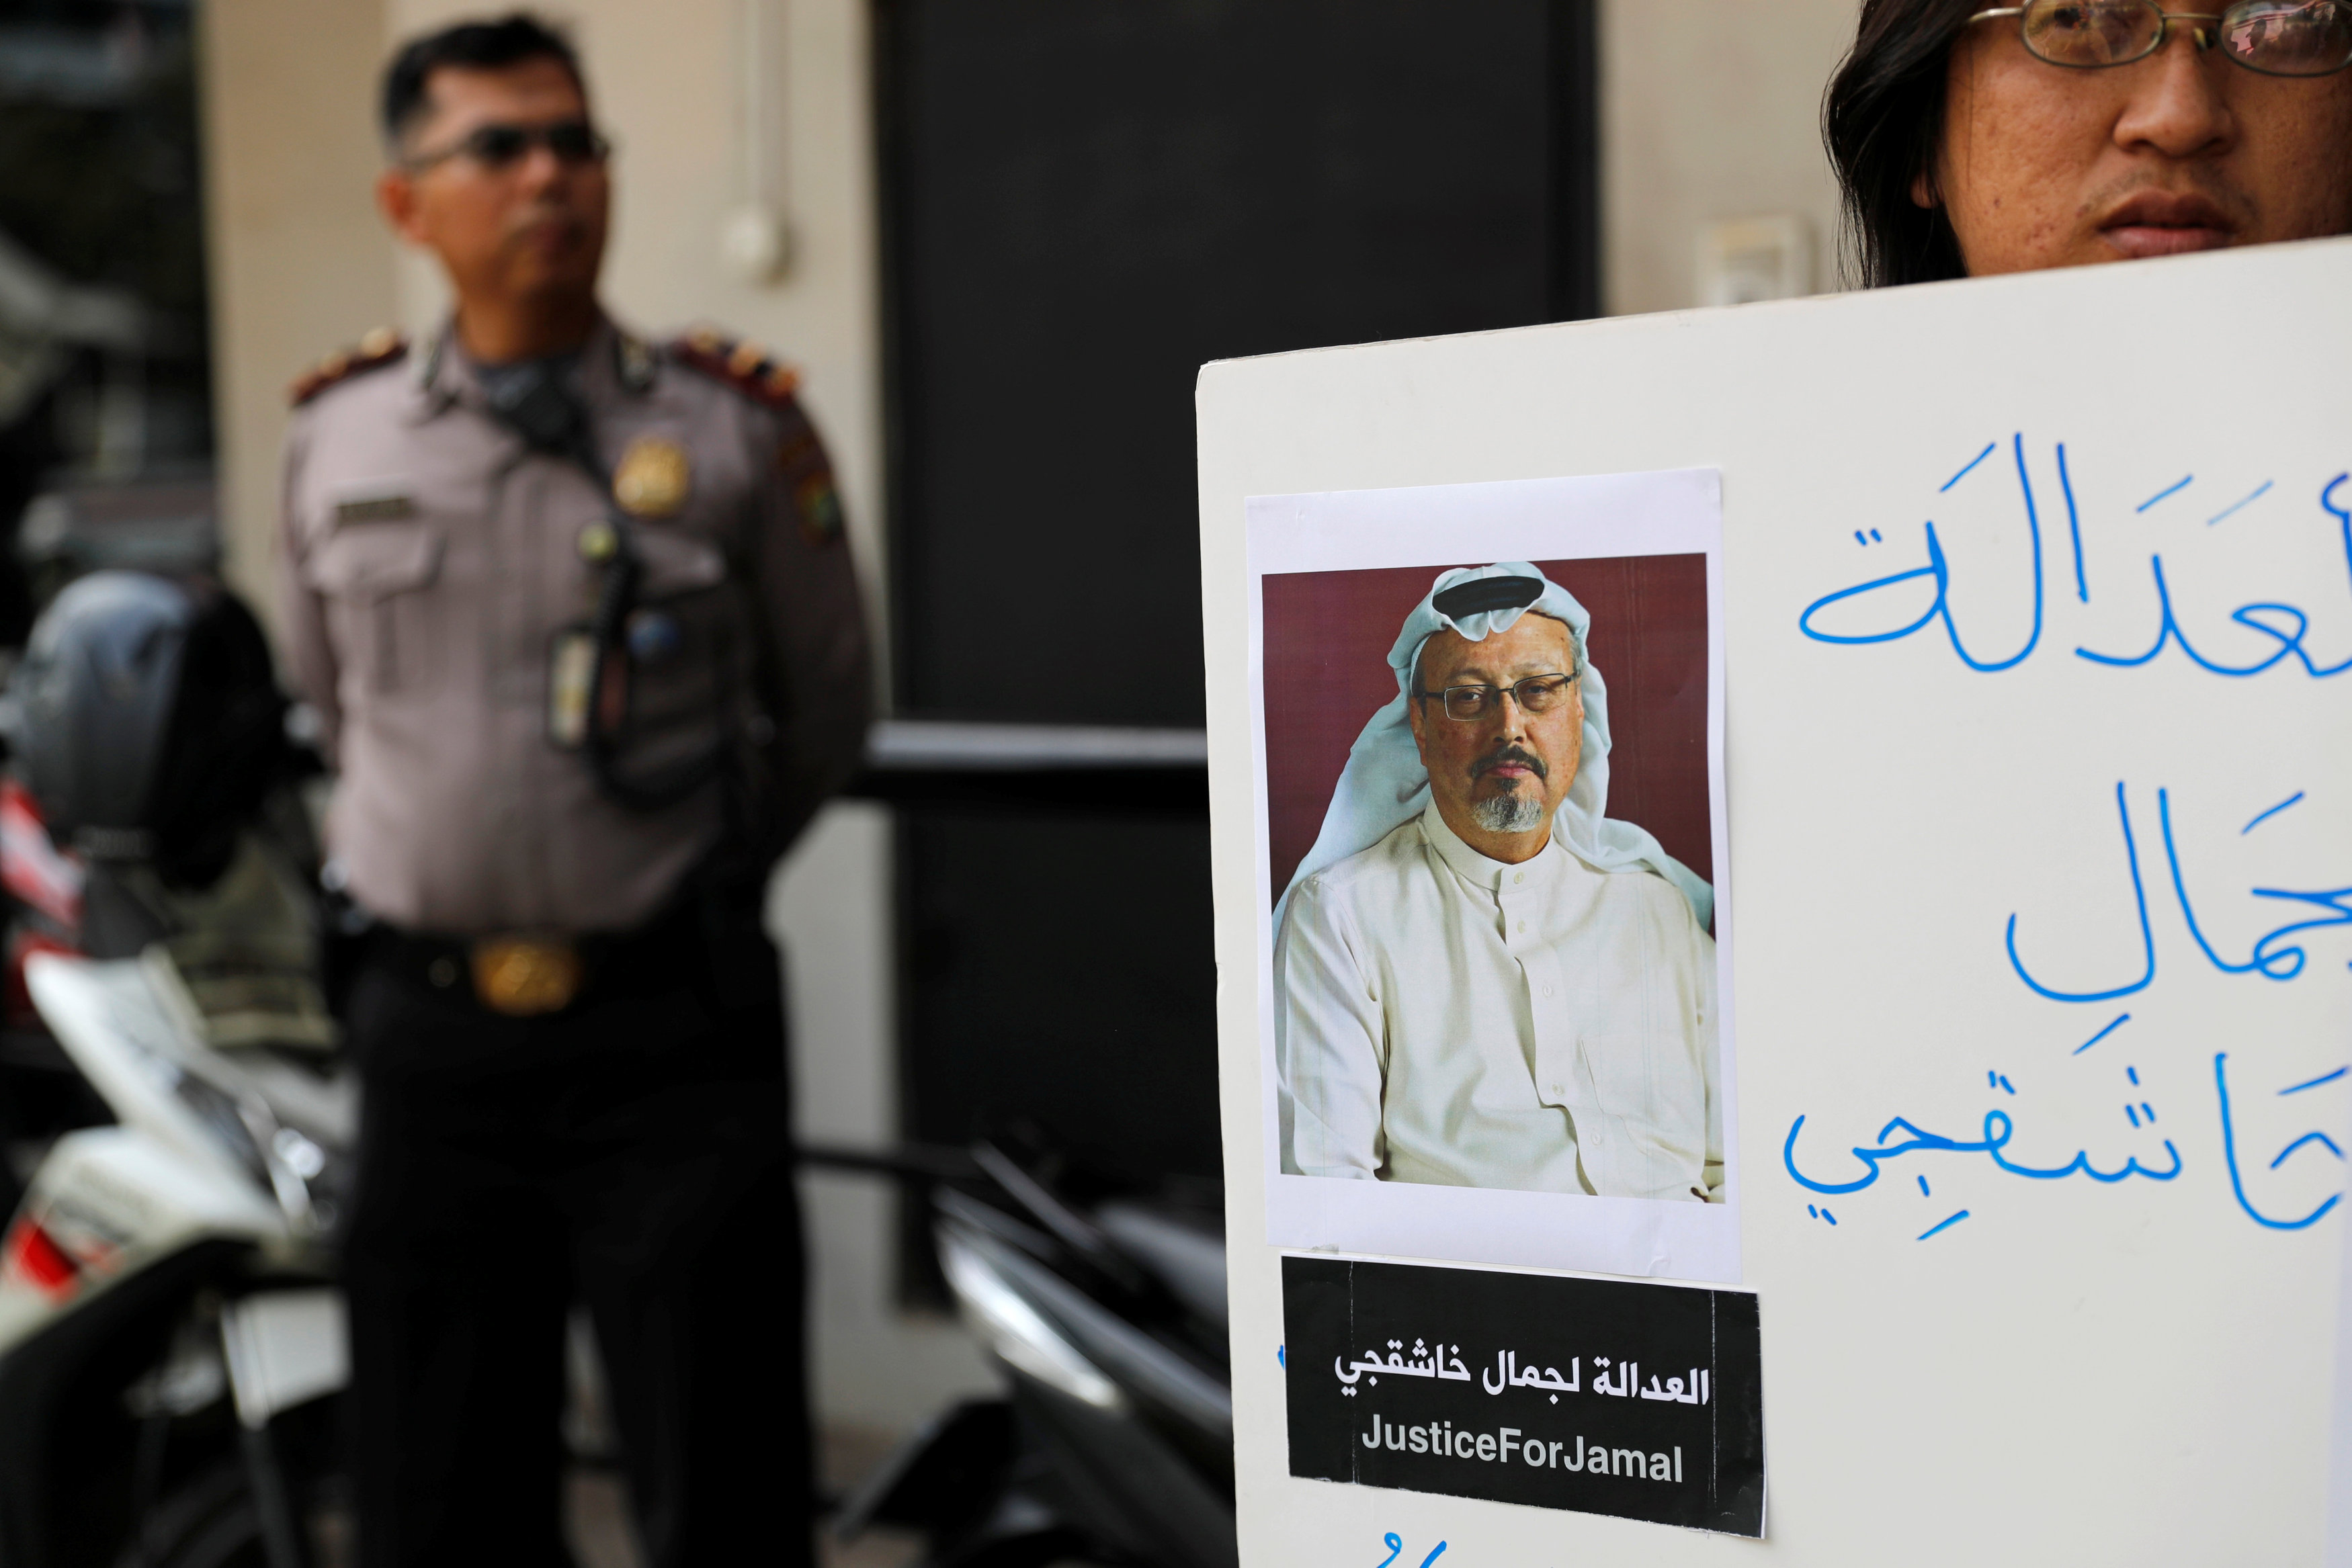 Equipo saudí debe haber actuado obedeciendo órdenes en caso de Khashoggi, dice Turquía